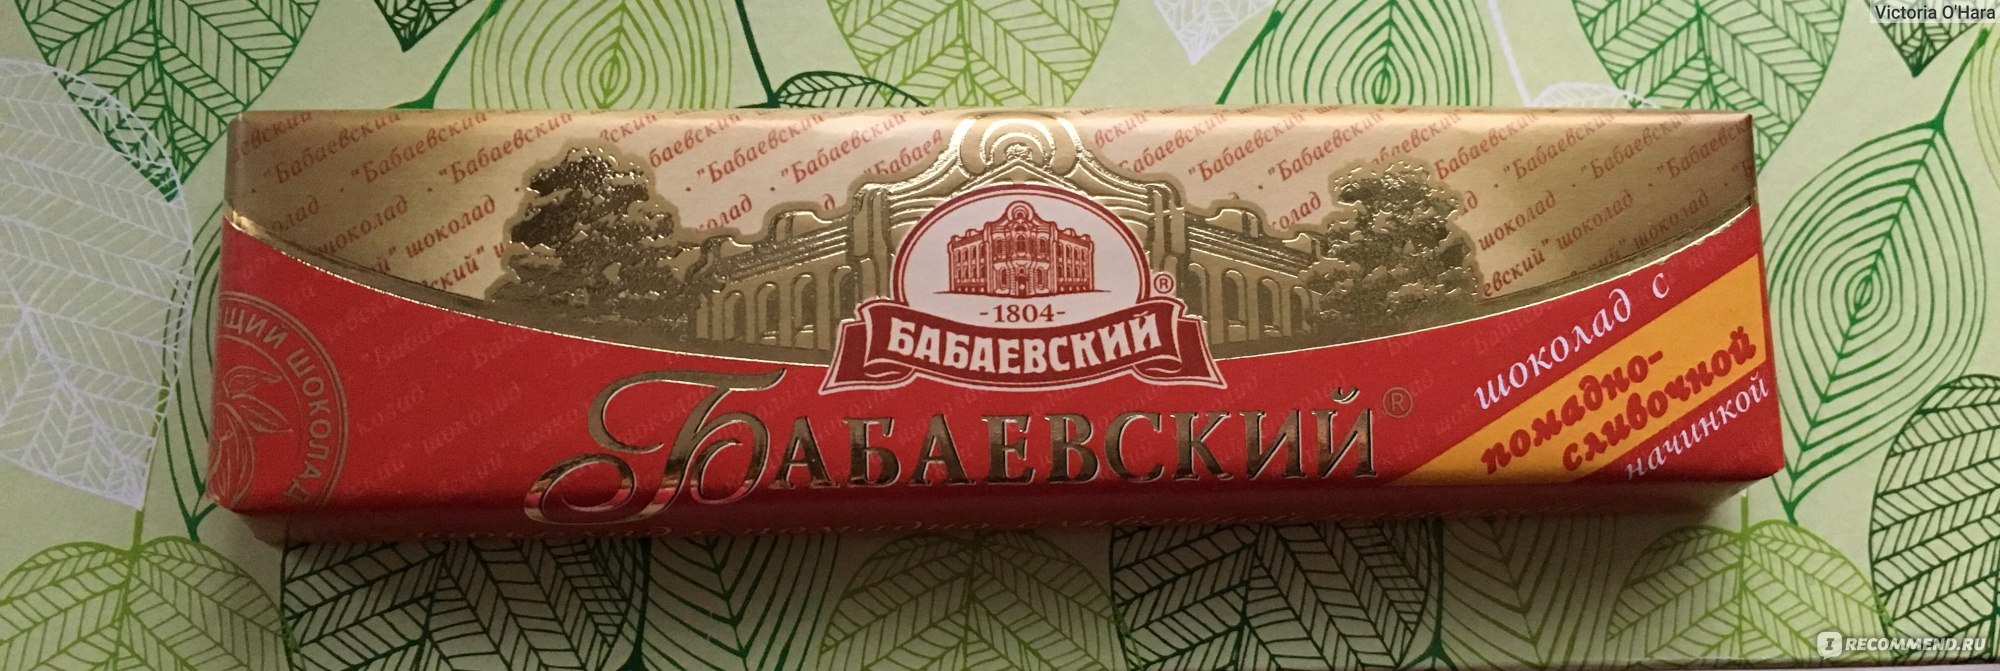 Шоколад Бабаевский красный октябрь